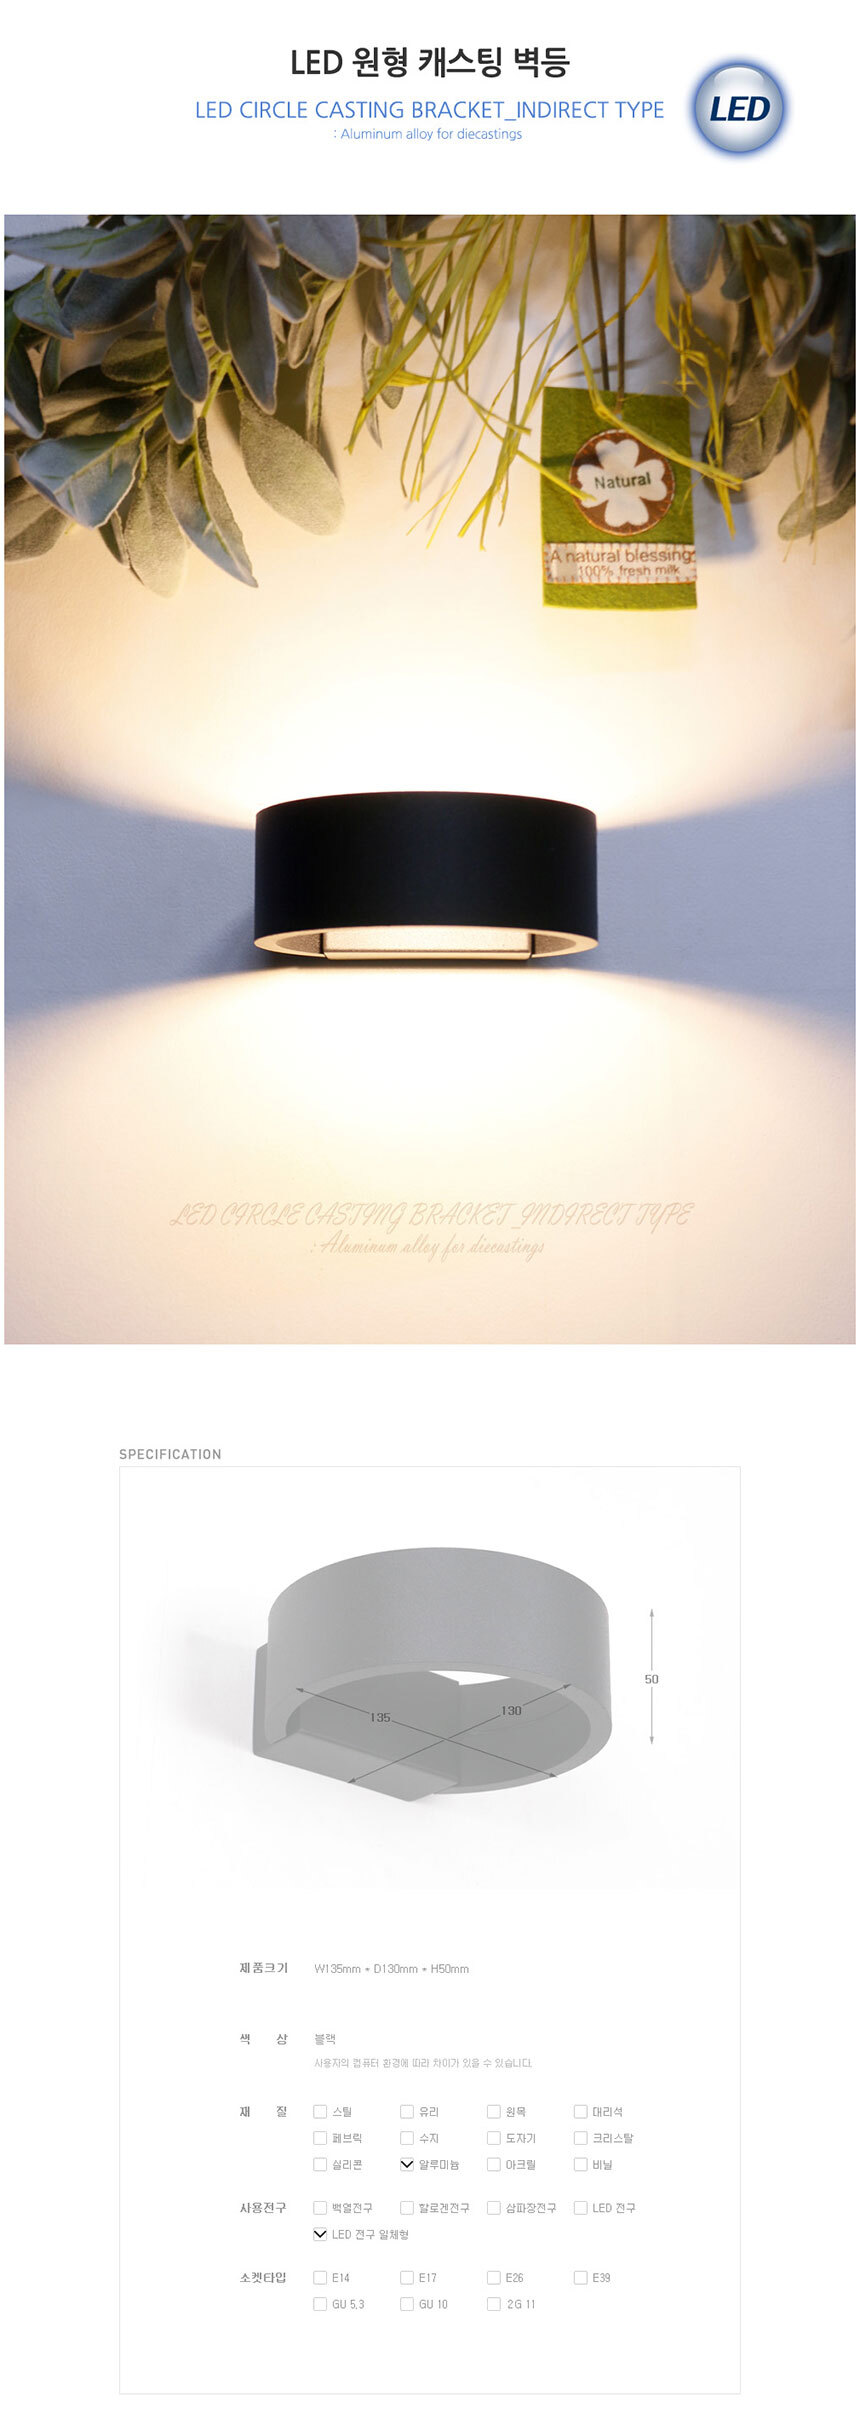 LED 원형 캐스팅 벽등
제품크기 w135mm * d130mm * h50mm
색상 블랙
재질 알루미늄
사용전구 LED 전구 일체형

